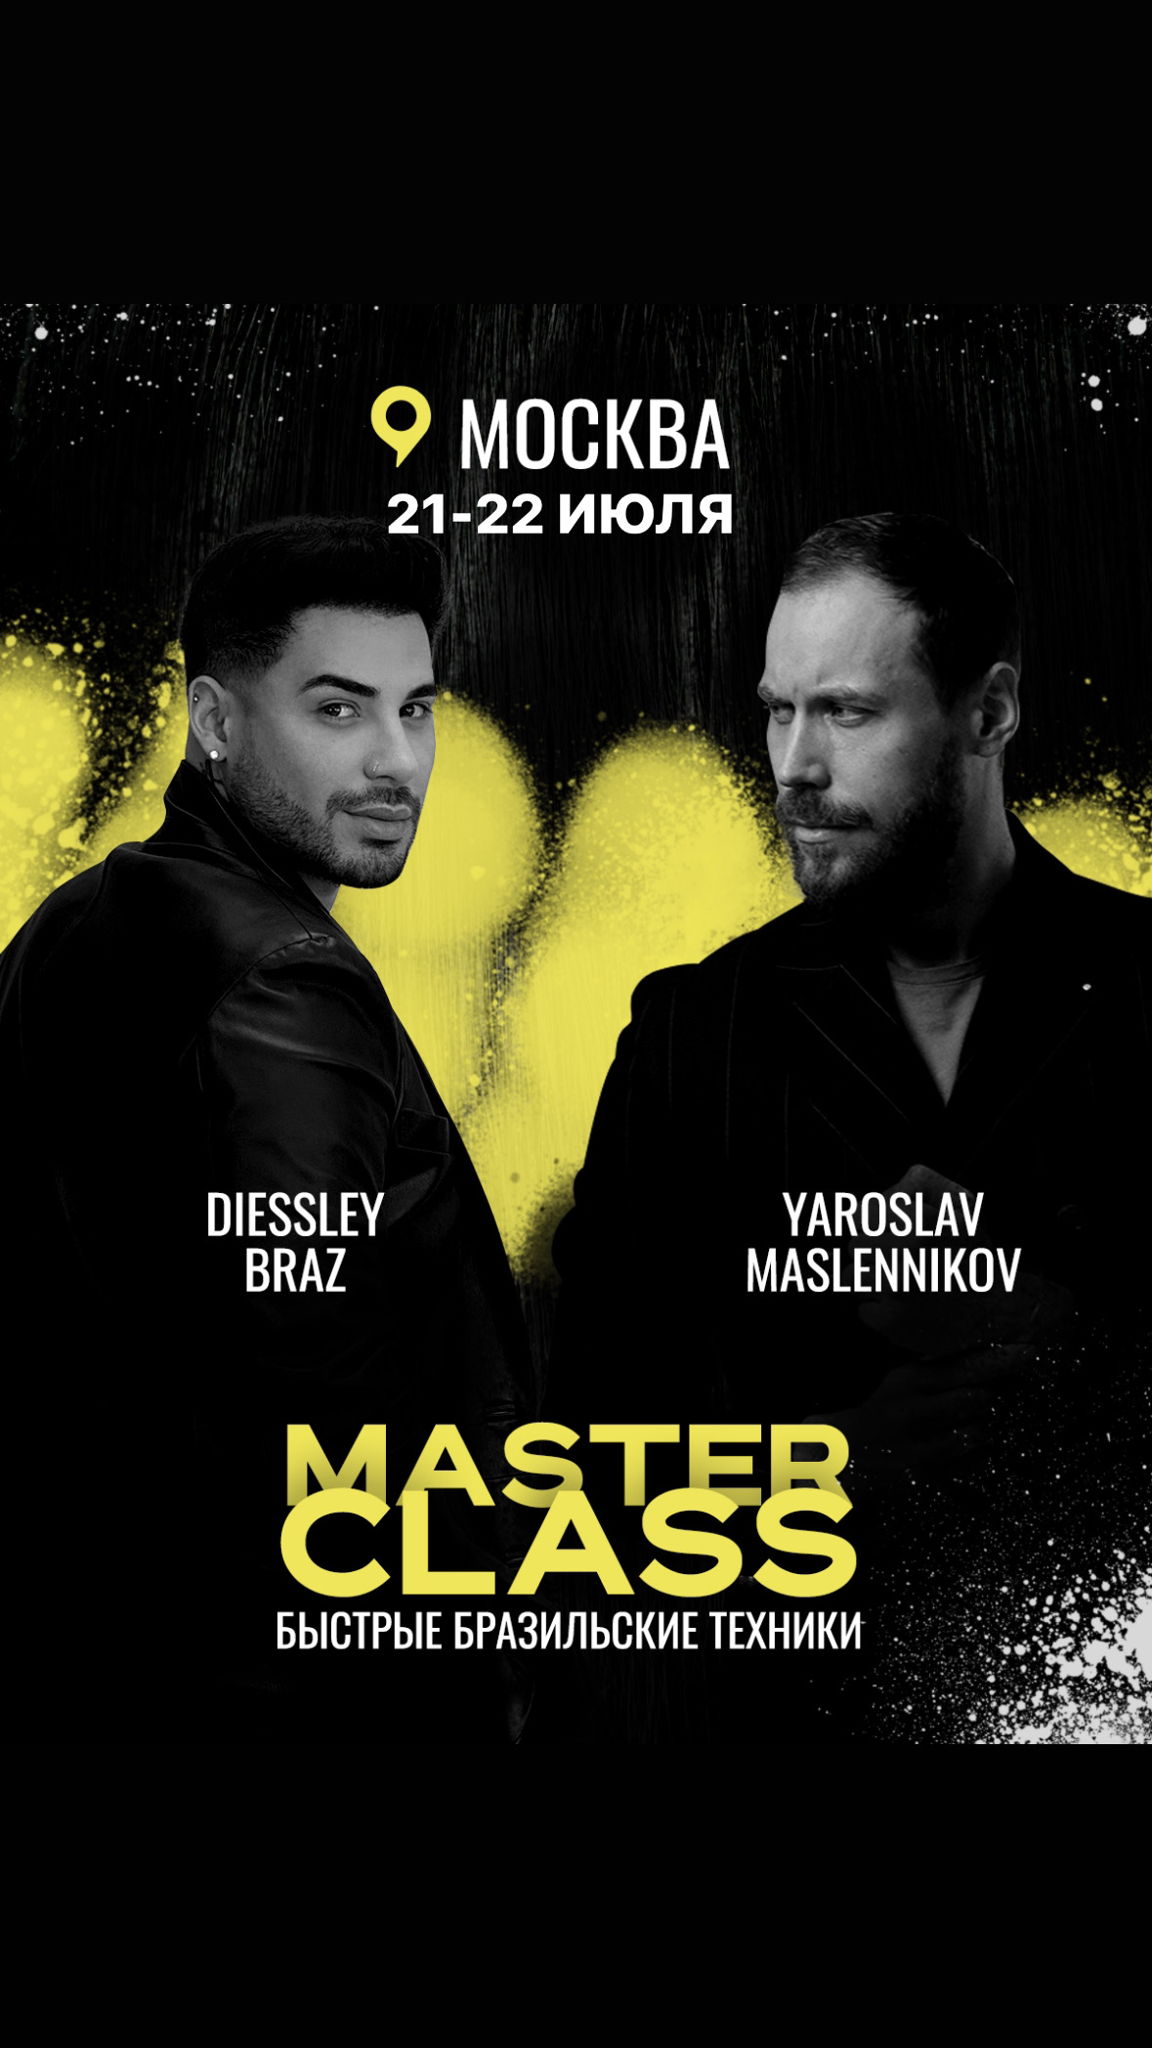 Мастер класс DIESSLEY BRAZ & YAROSLAV MASLENNIKOV «Быстрые бразильские техники»